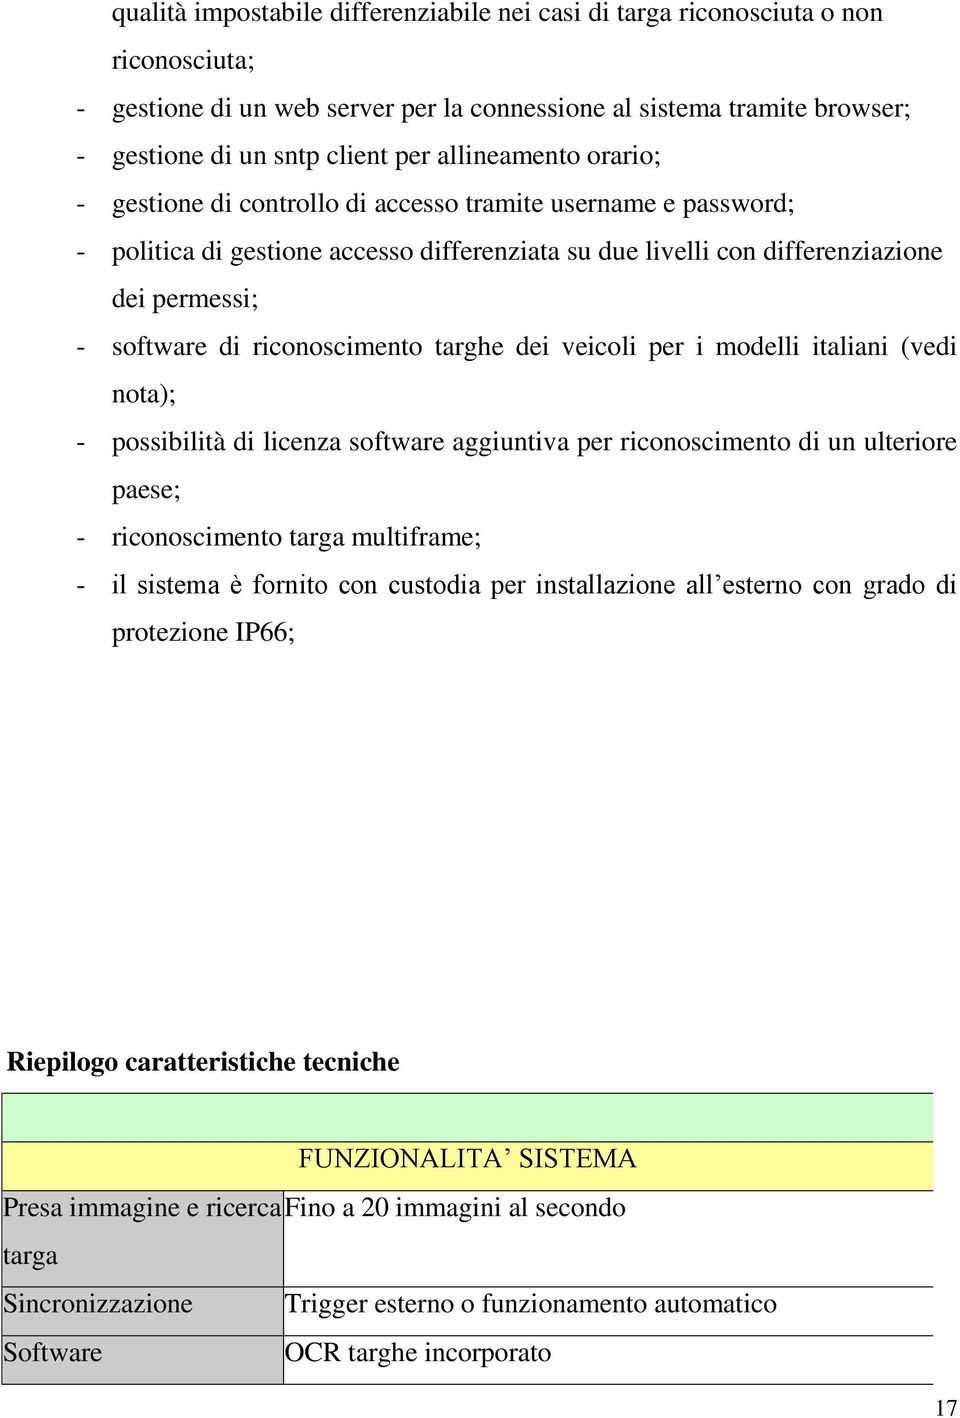 riconoscimento targhe dei veicoli per i modelli italiani (vedi nota); - possibilità di licenza software aggiuntiva per riconoscimento di un ulteriore paese; - riconoscimento targa multiframe; - il